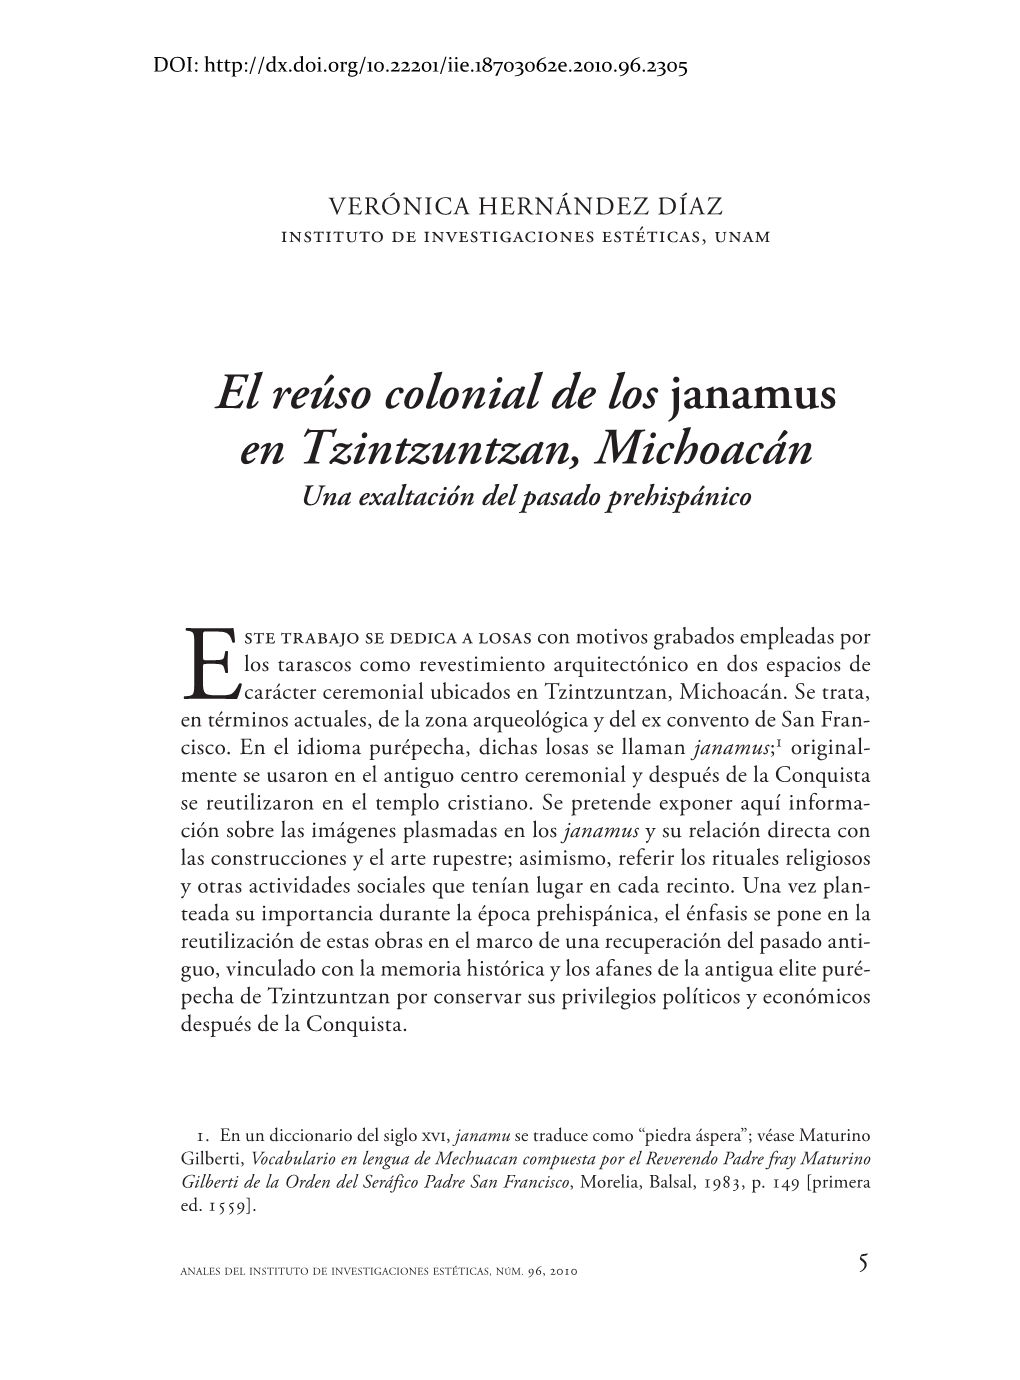 El Reúso Colonial De Los Janamus En Tzintzuntzan, Michoacán Una Exaltación Del Pasado Prehispánico